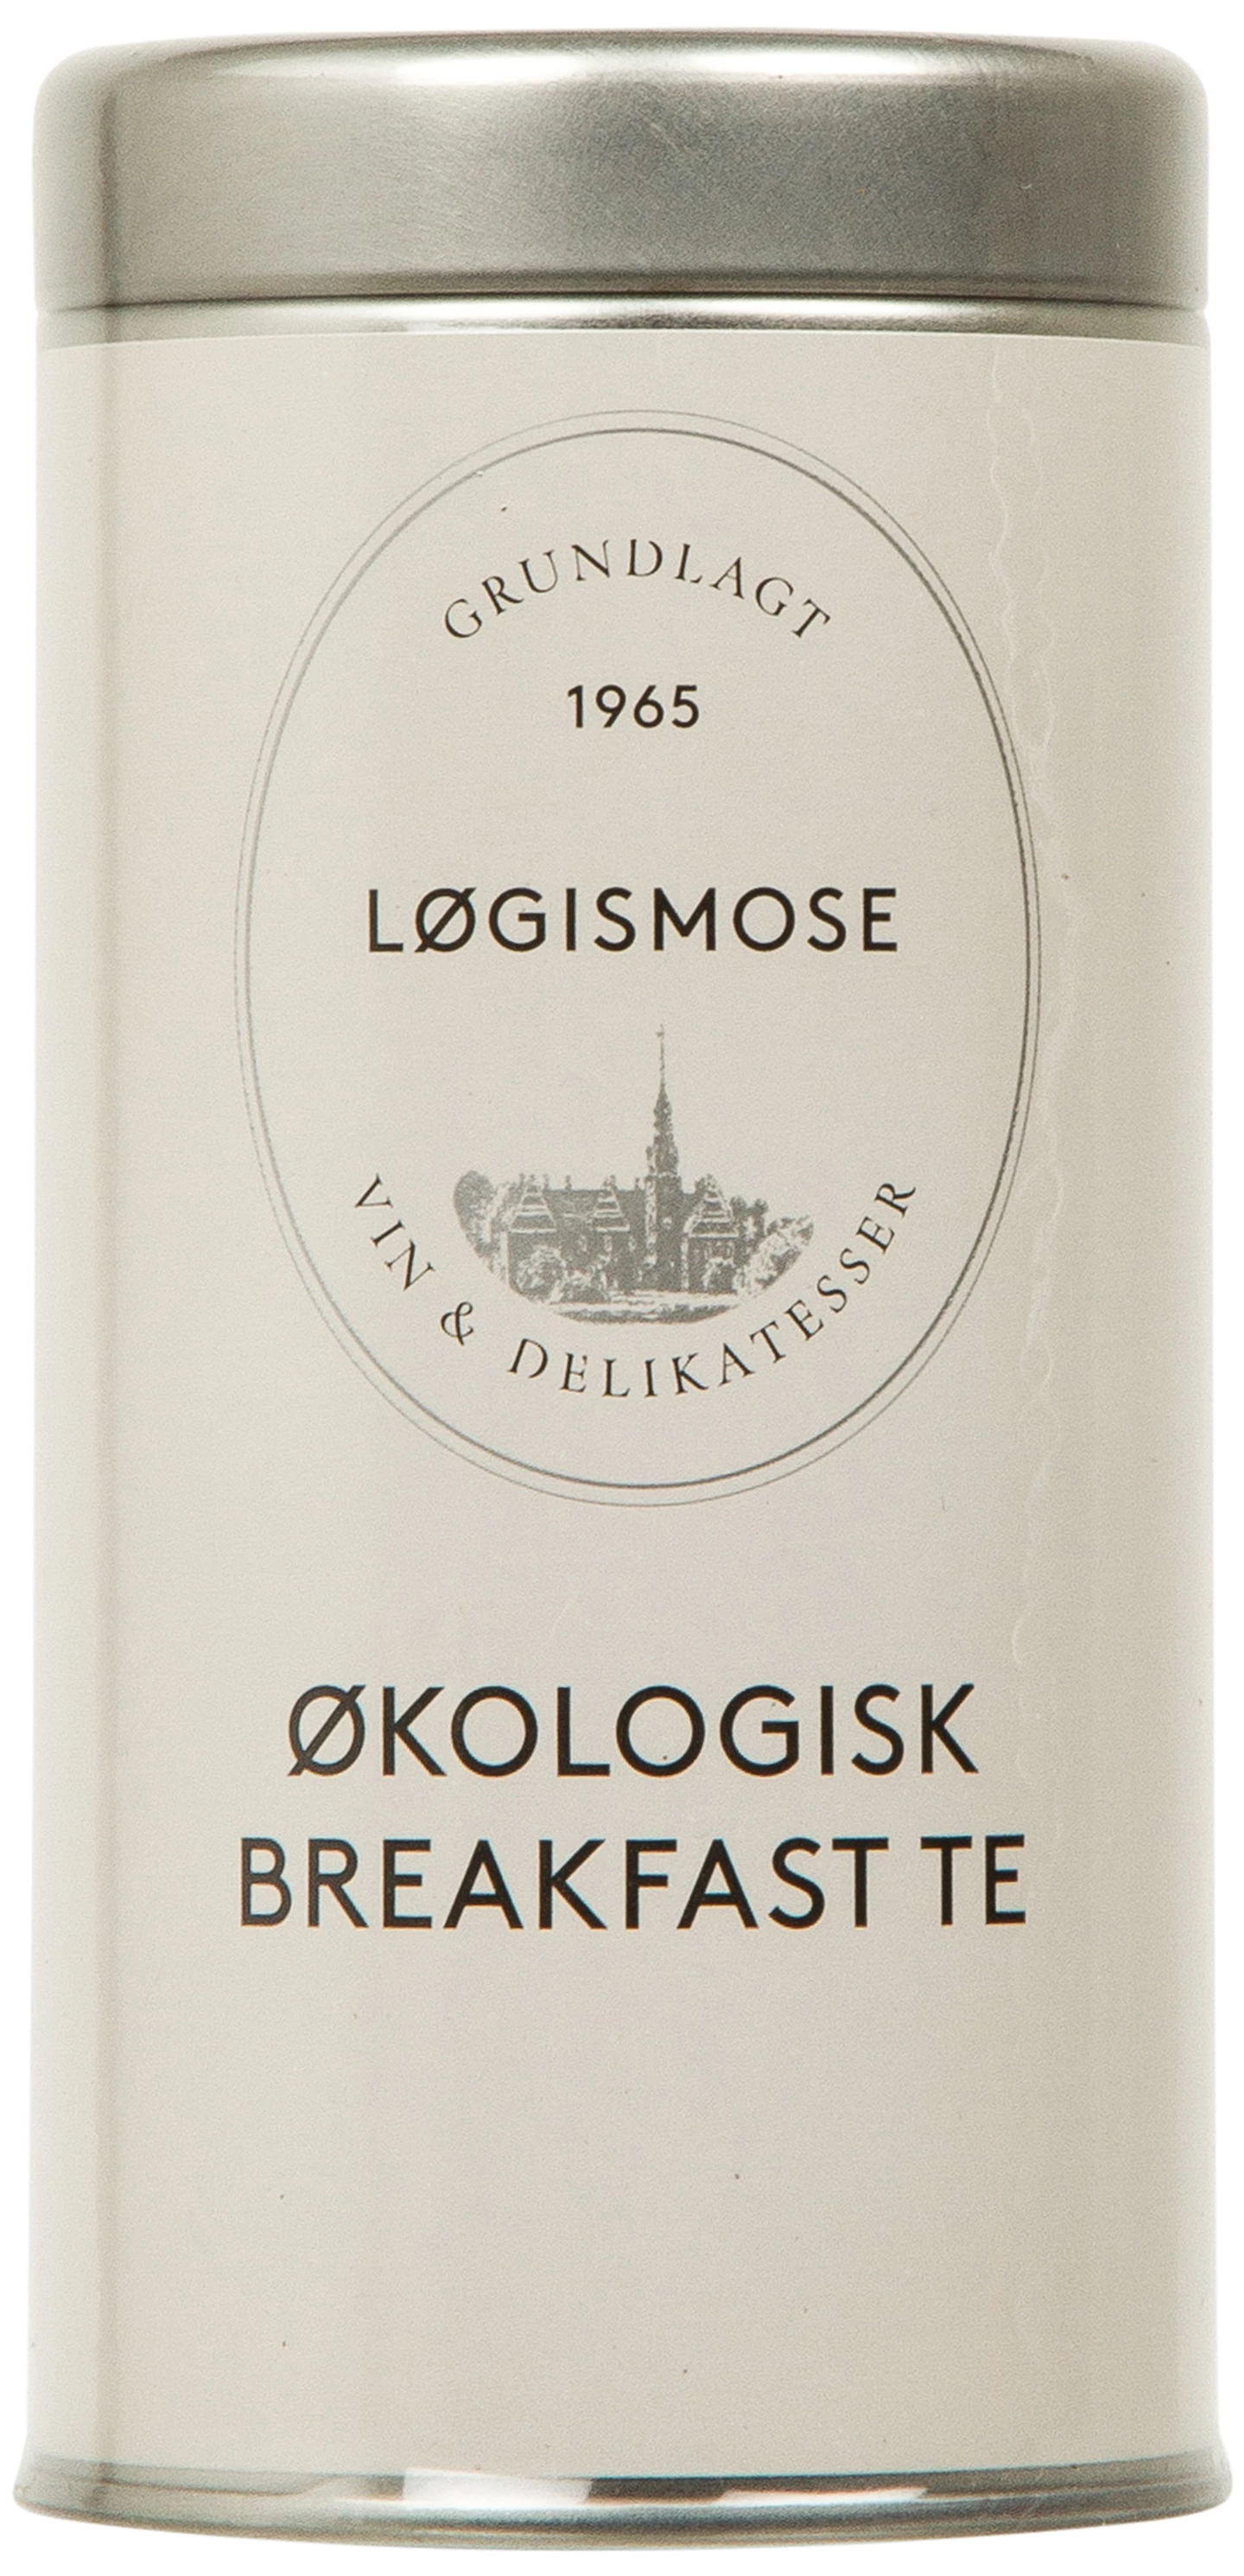 Løgismose Delikatesser - Løgimose - Breakfast te 75g  økologisk - 127975